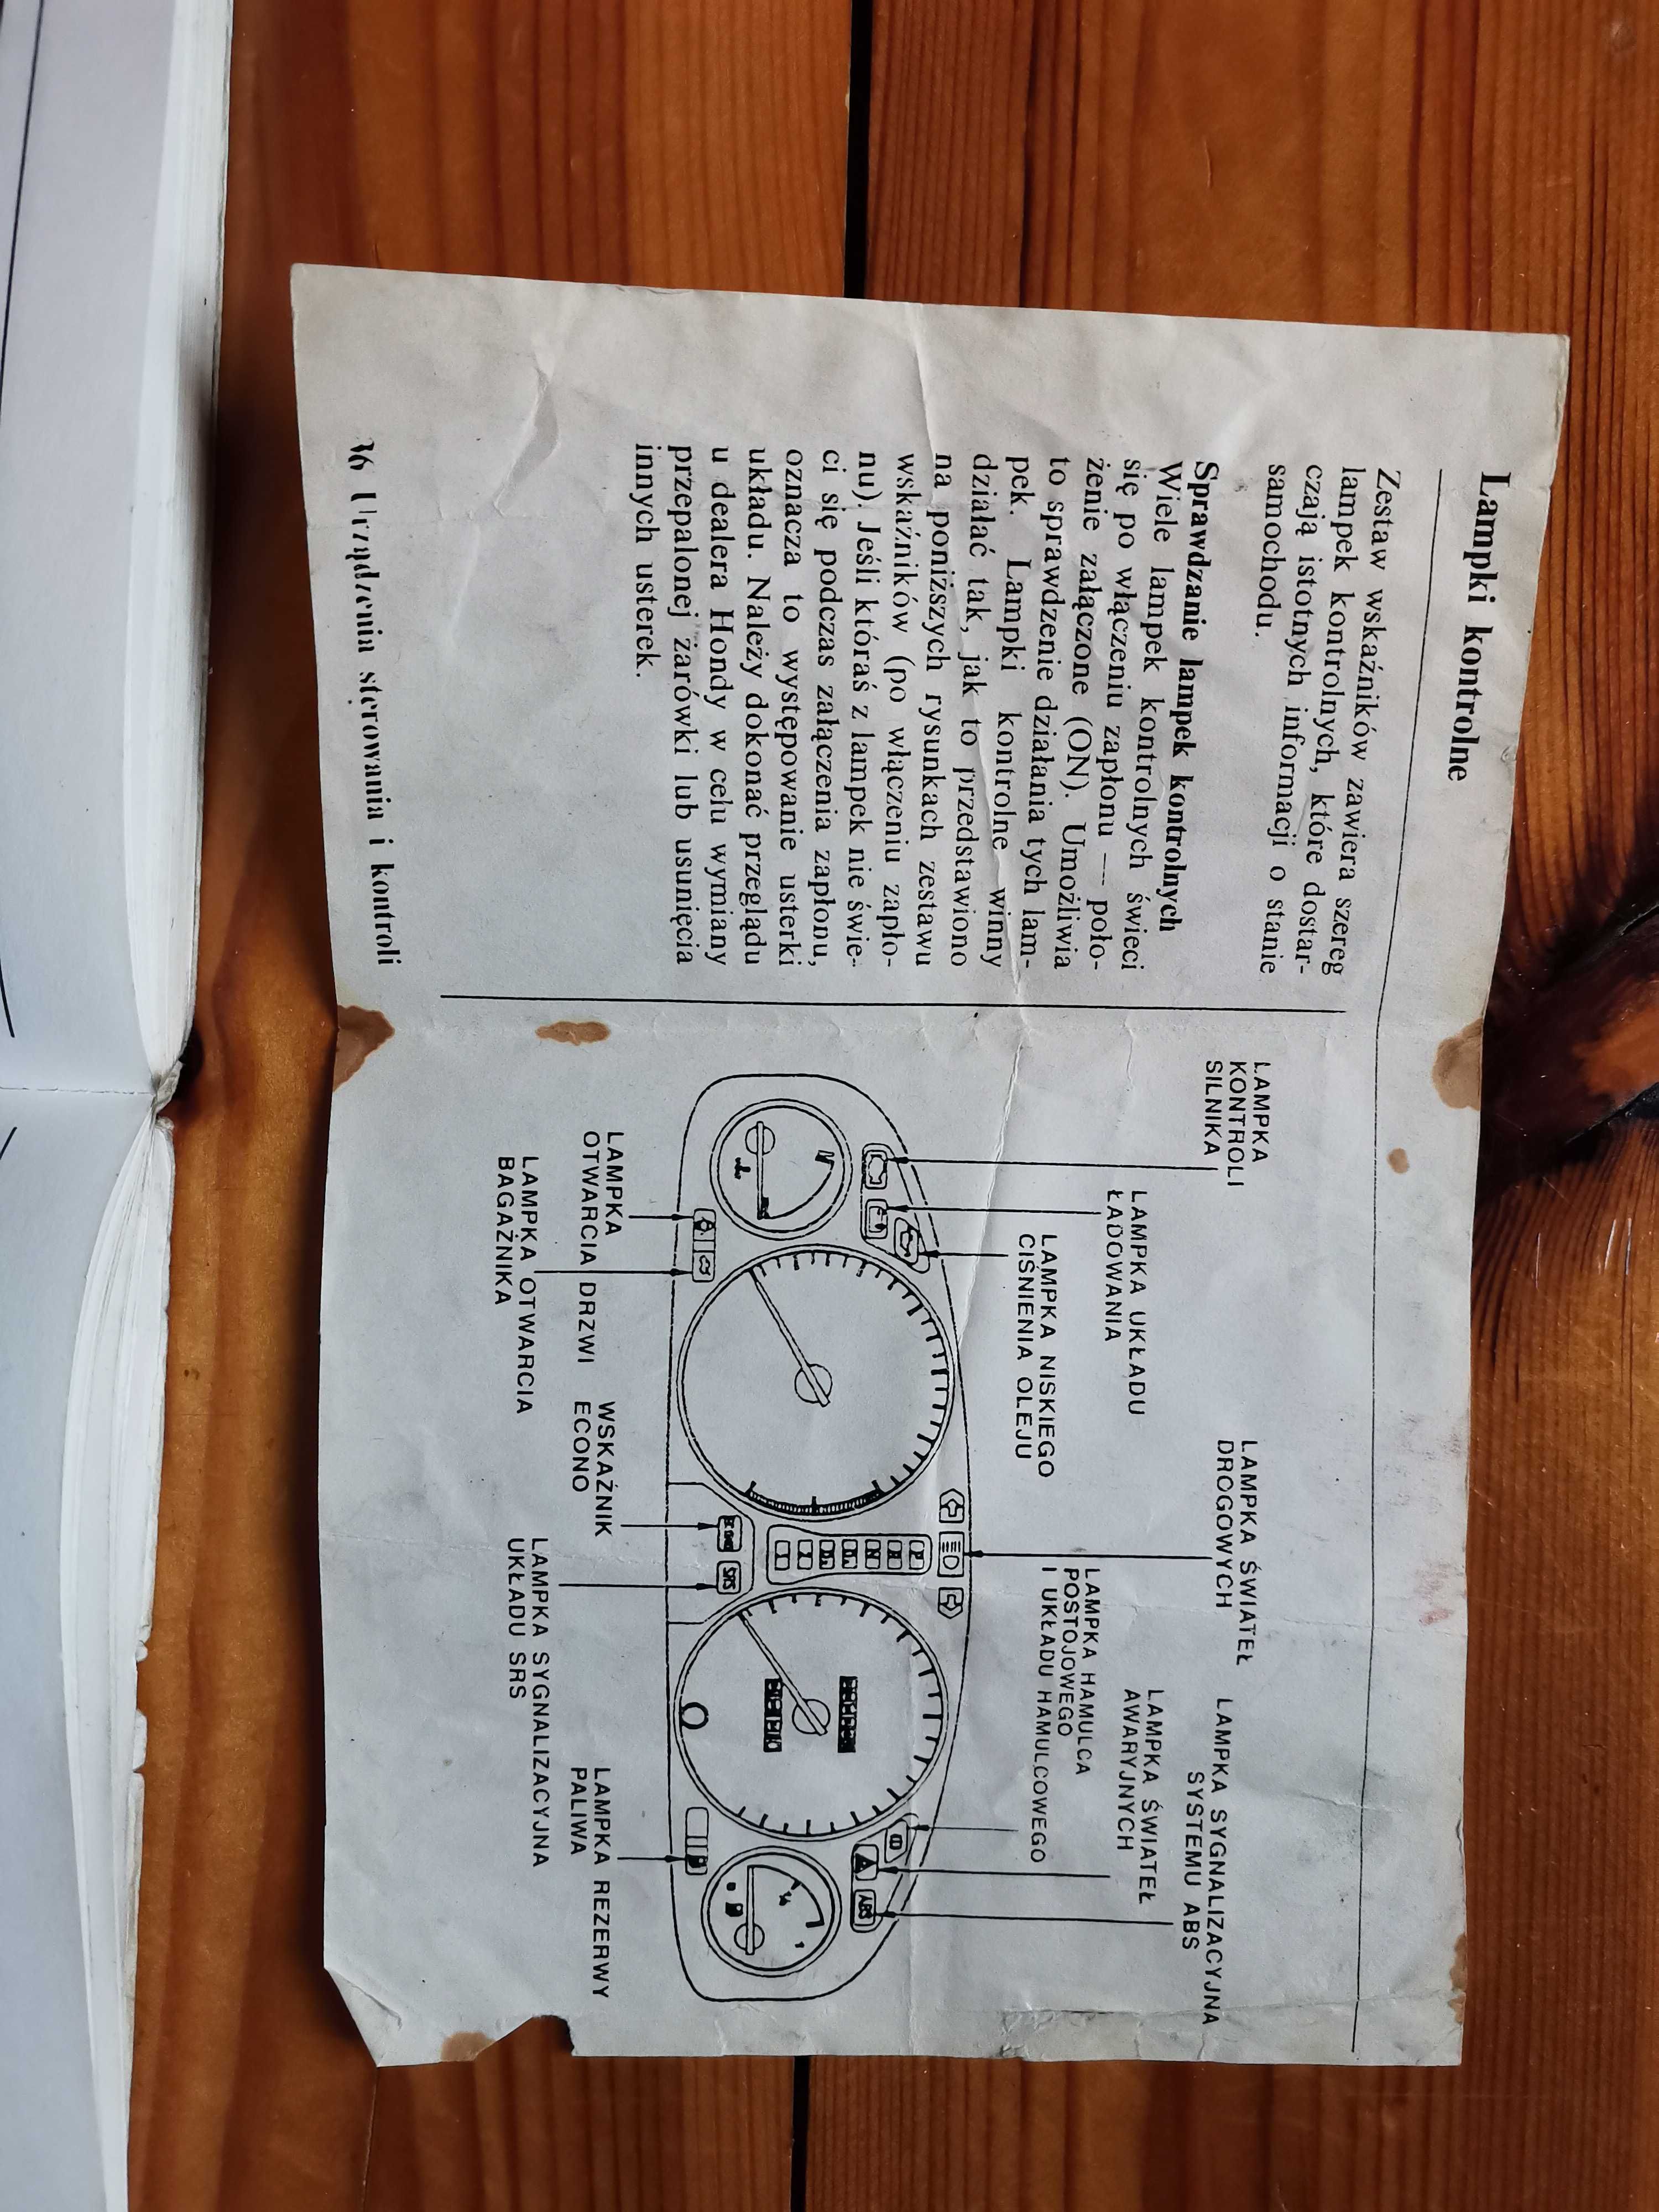 Honda civic 5D instrukcja, Książka